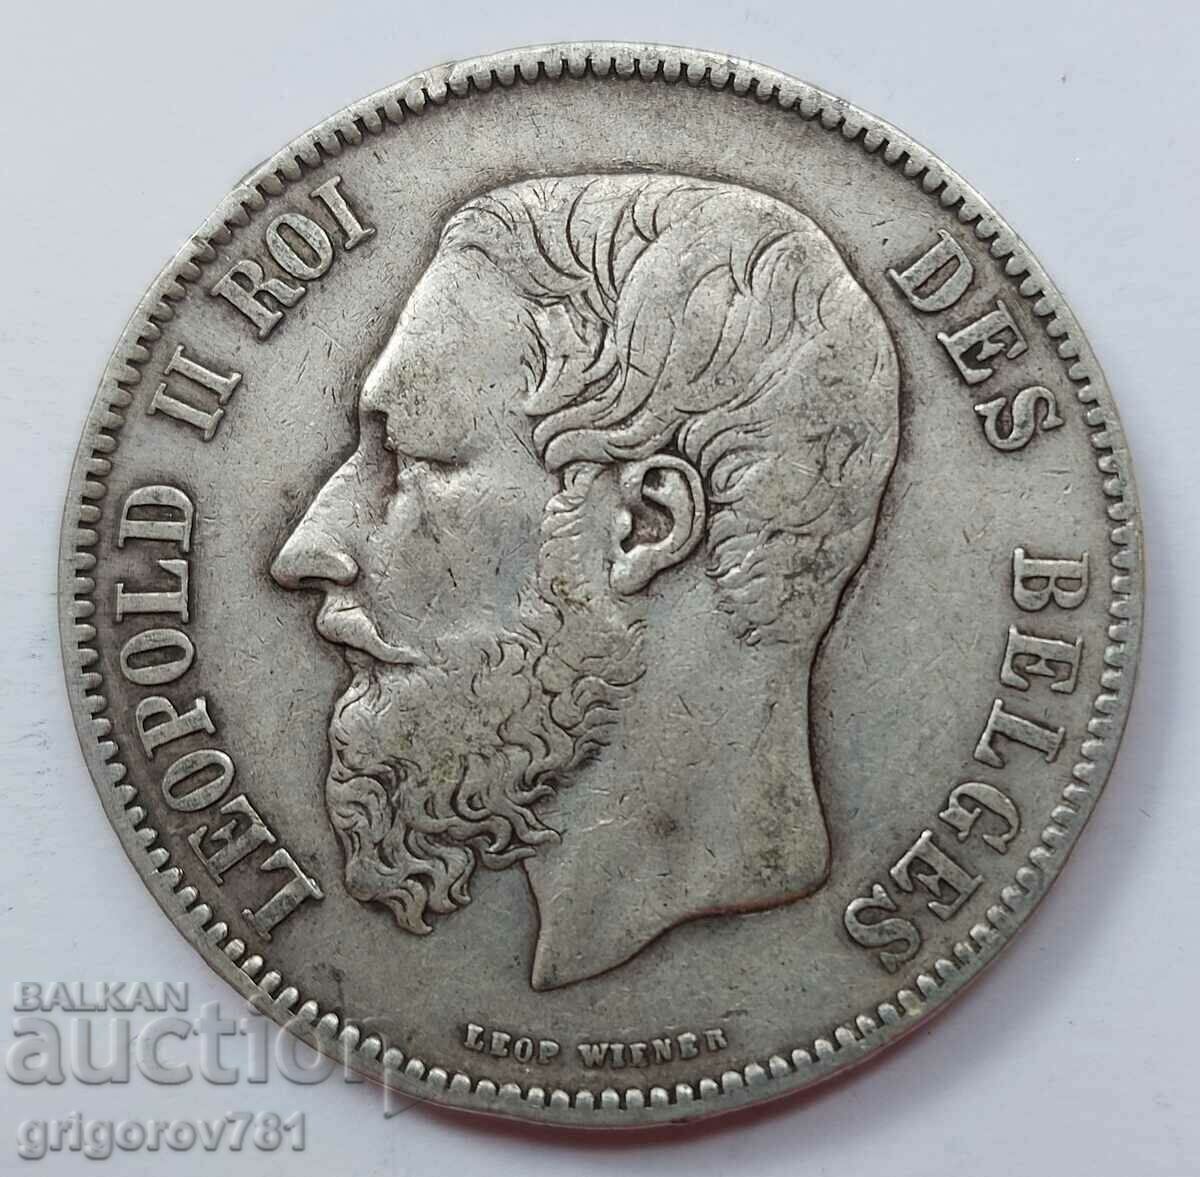 Ασημένιο 5 φράγκα Βέλγιο 1870 - ασημένιο νόμισμα # 21